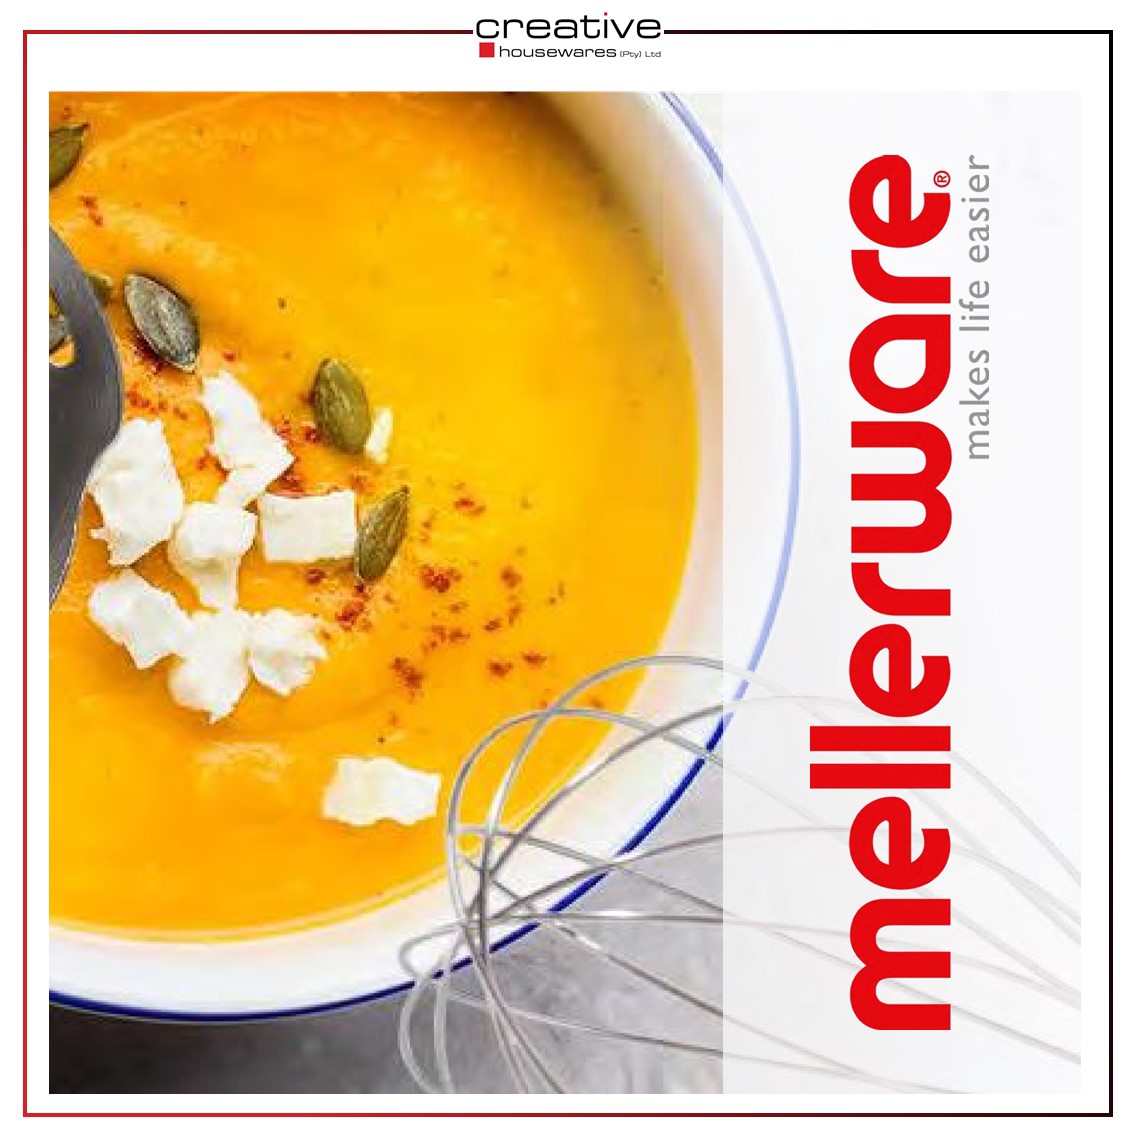 Creative Housewares - Mellerware 2021 Catalogue Catalogue